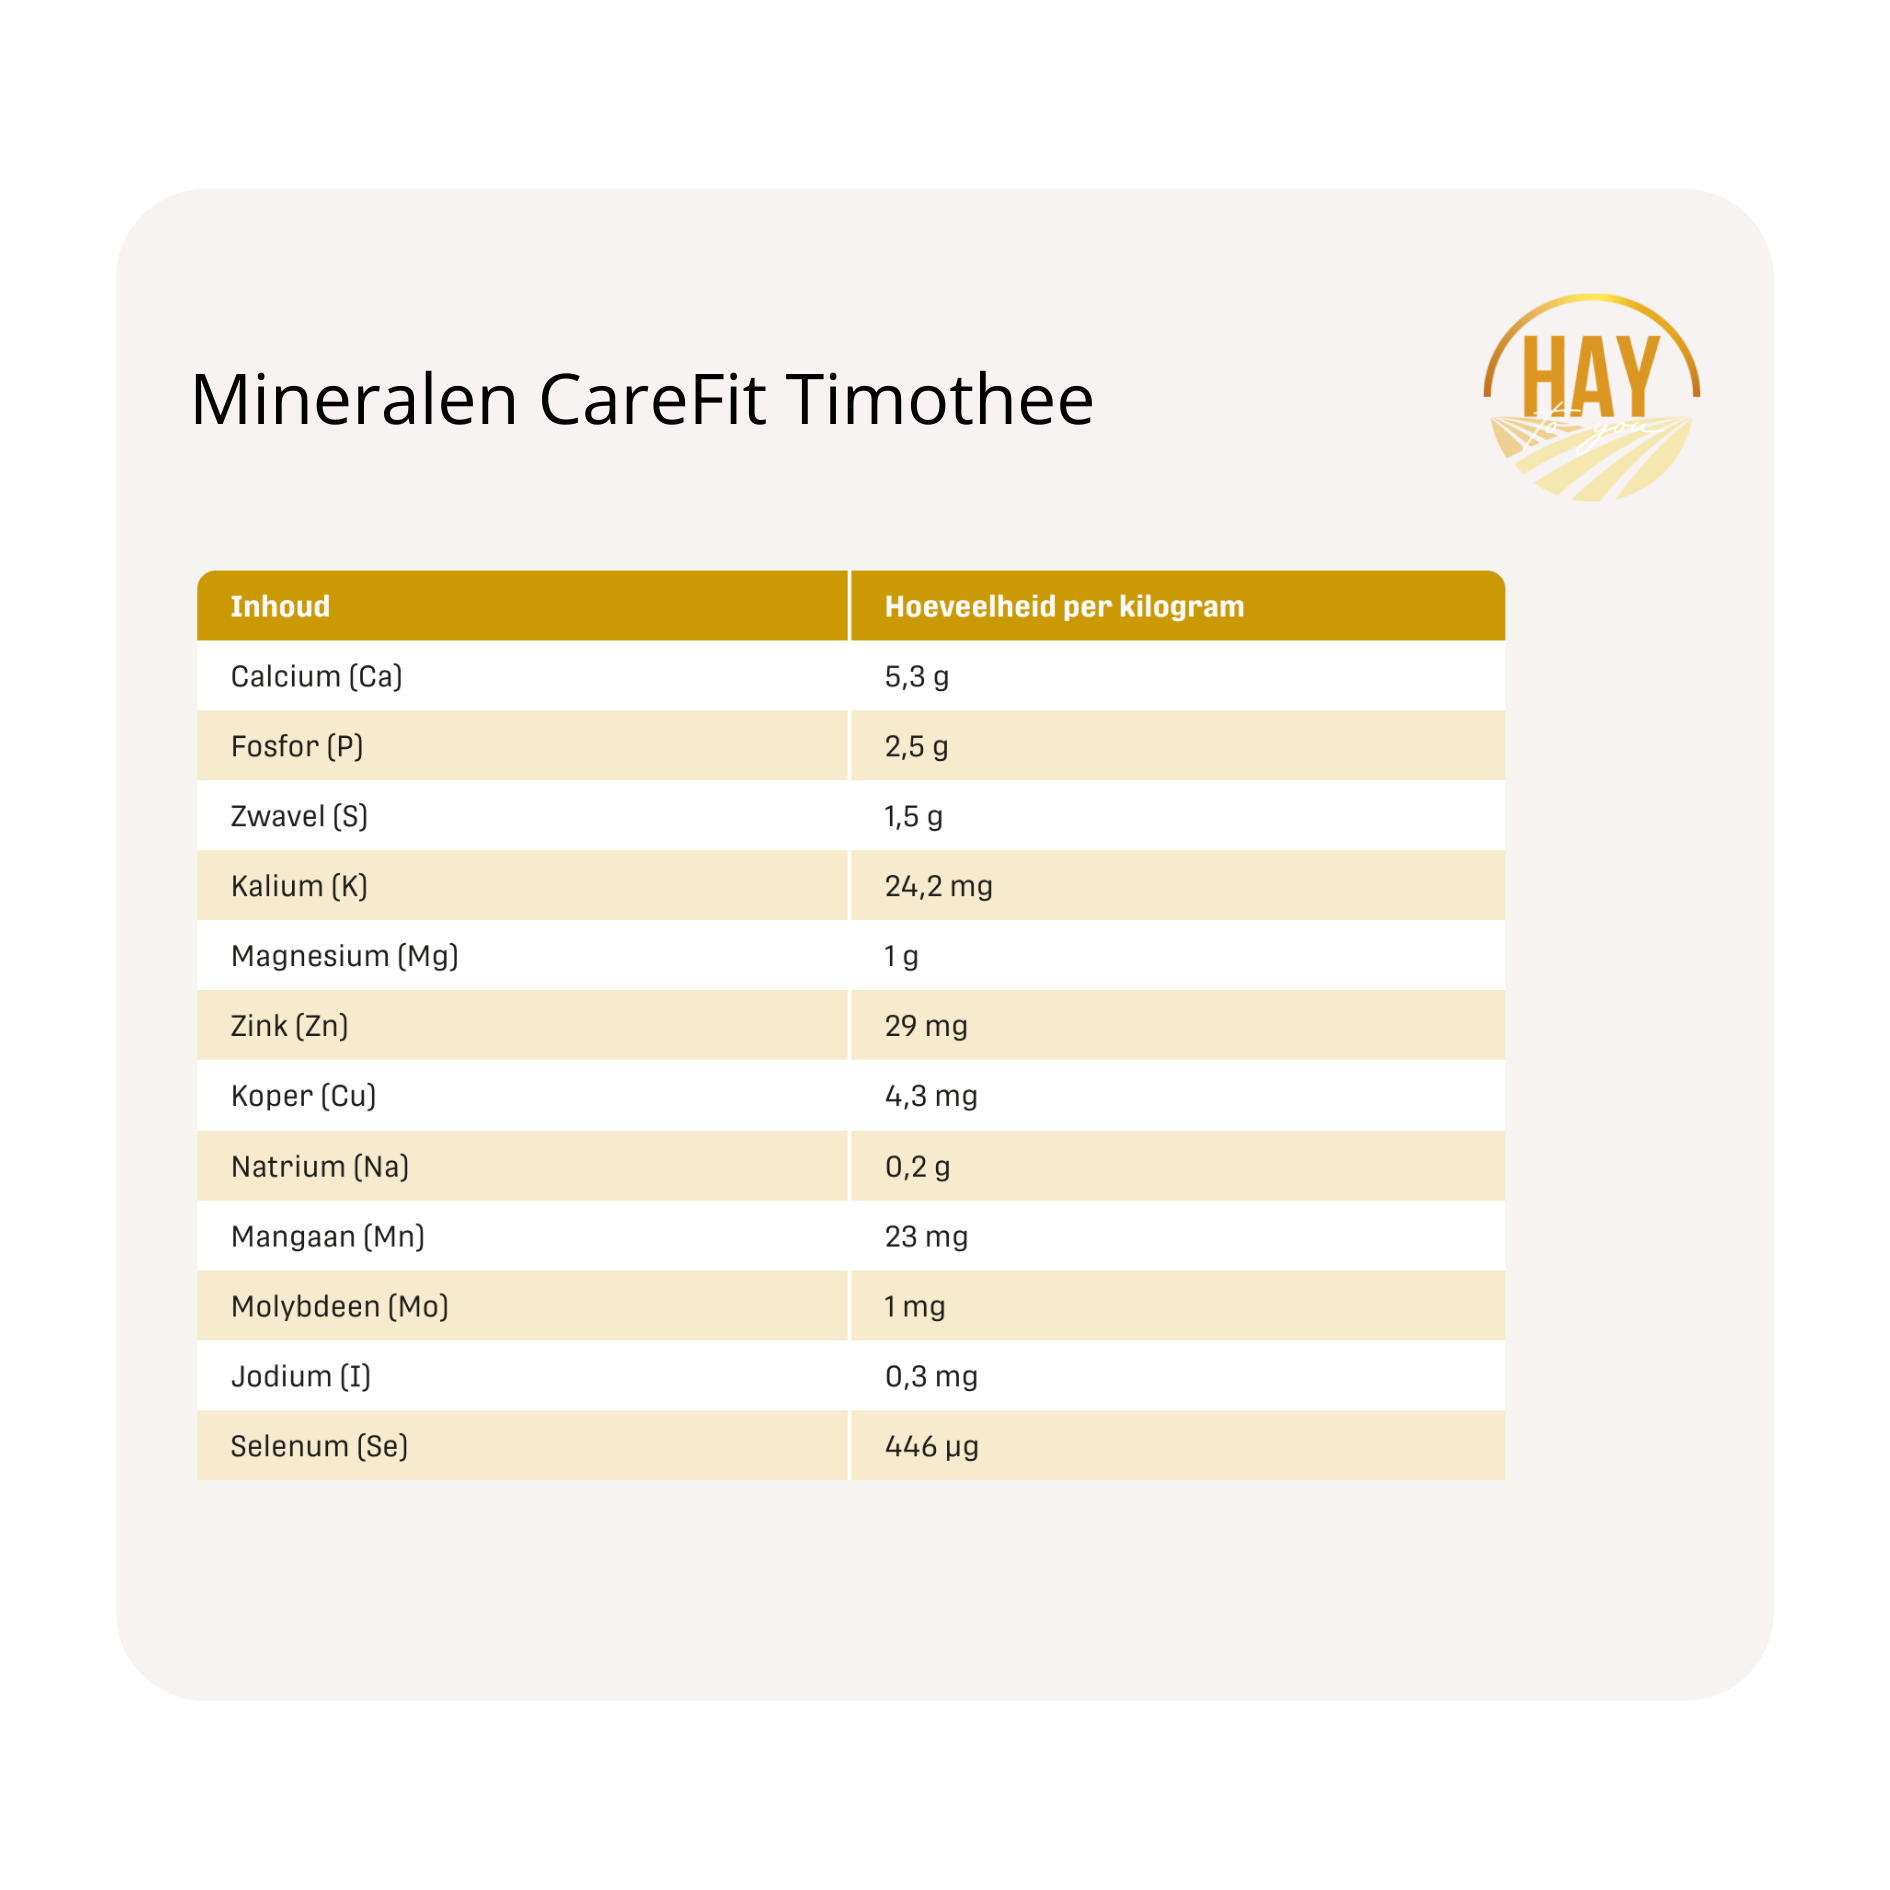 mineralen Metazoa krachtvoer en supplementen CareFit Timothee2